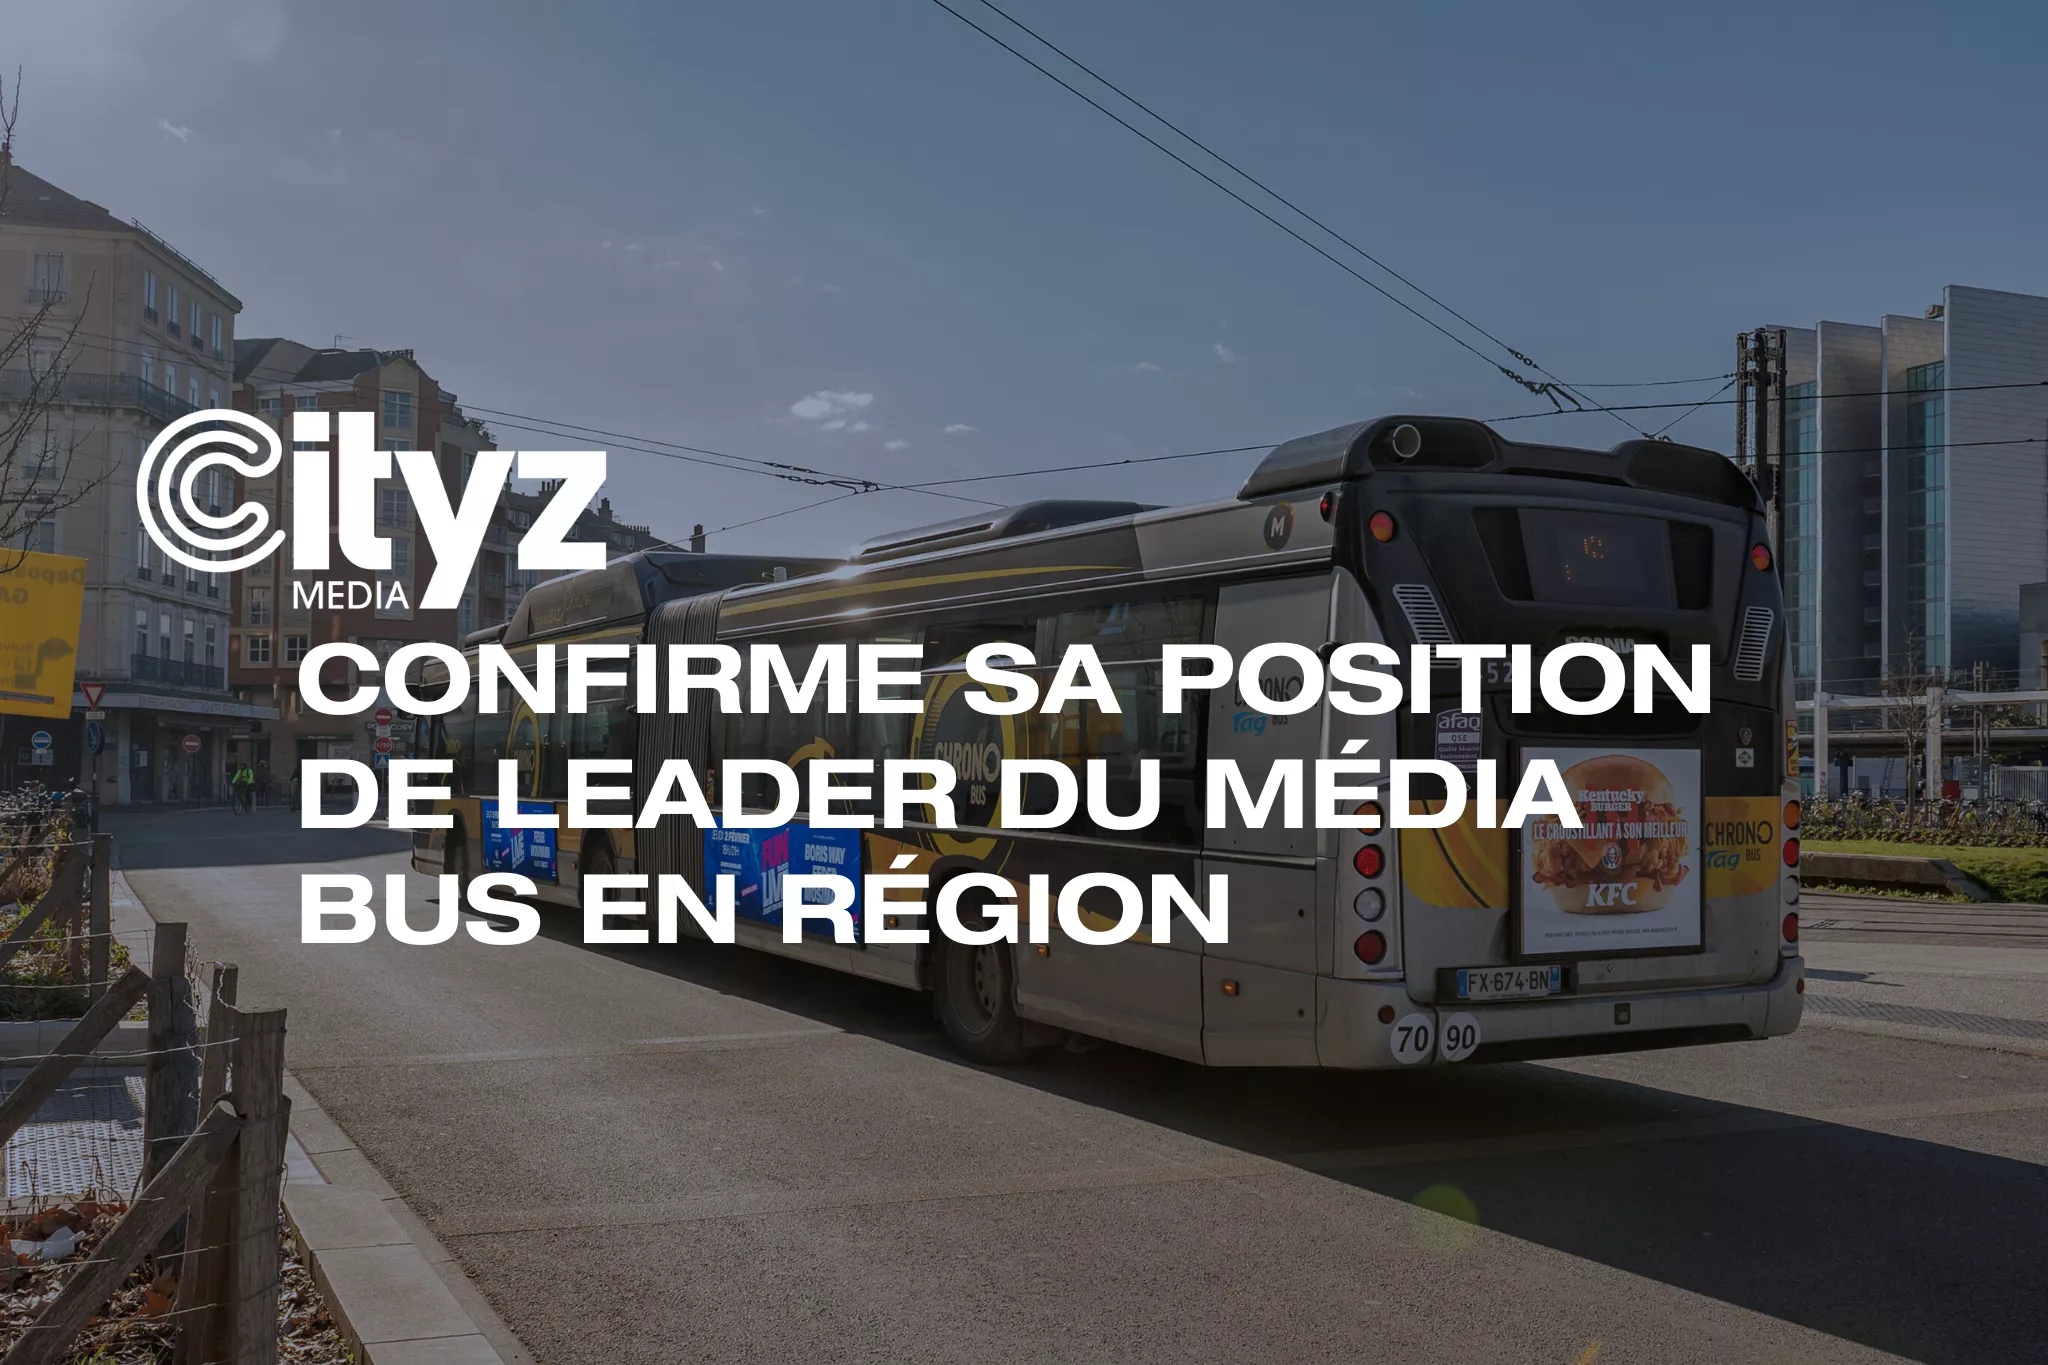 Cityz Media confirme sa position de leader du média bus en région